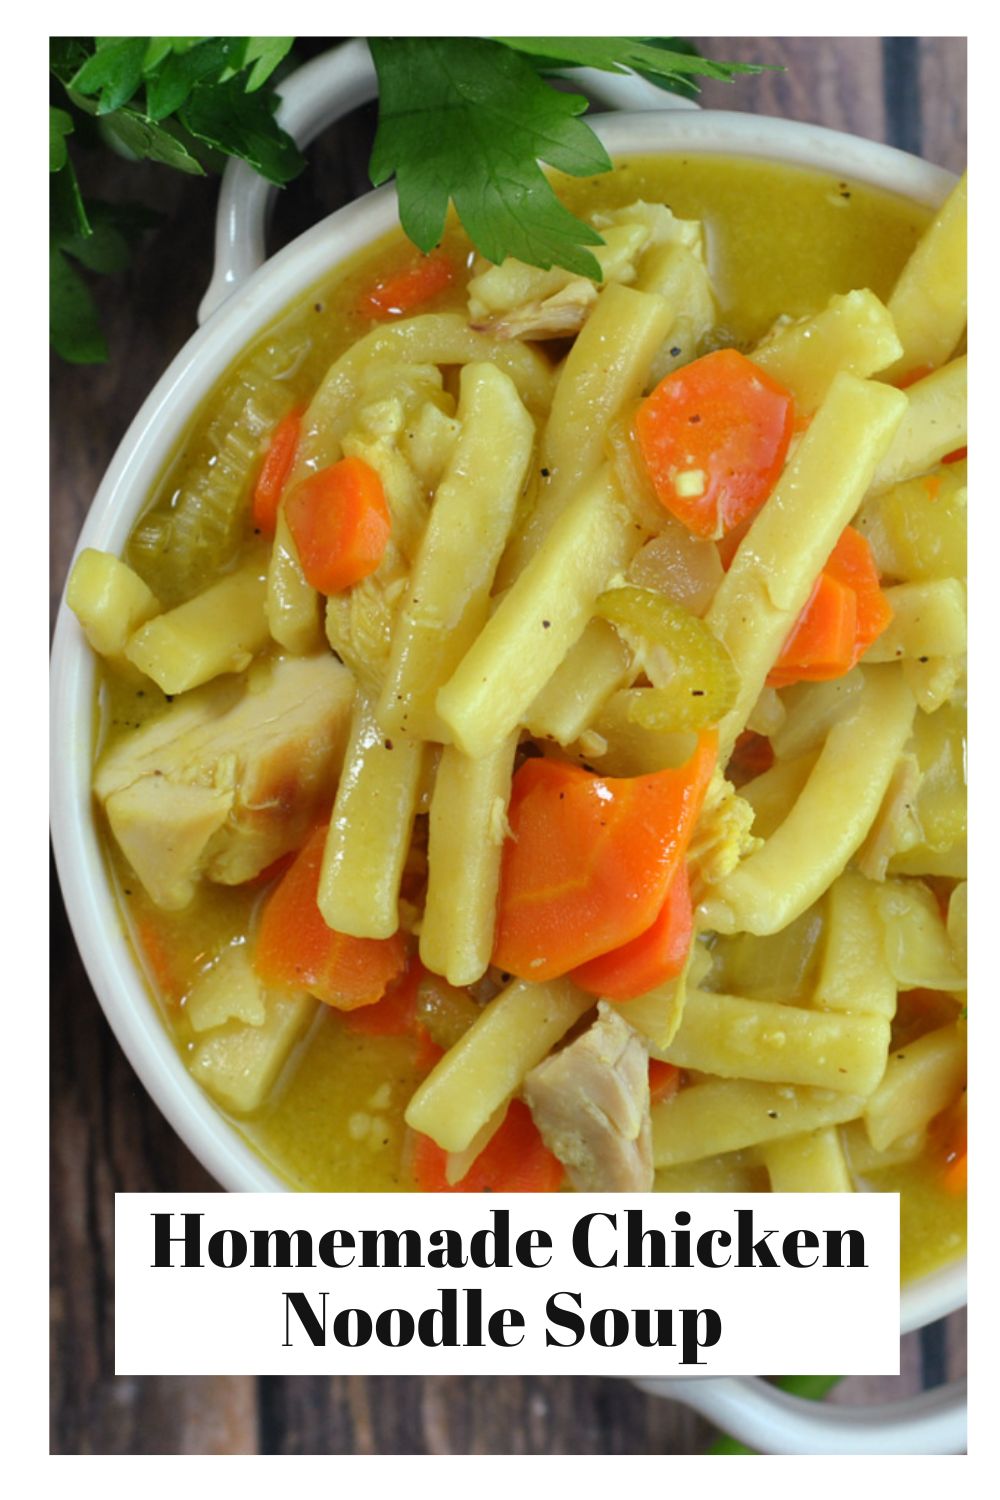 Homemade Chicken Noodle Soup via @preventionrd